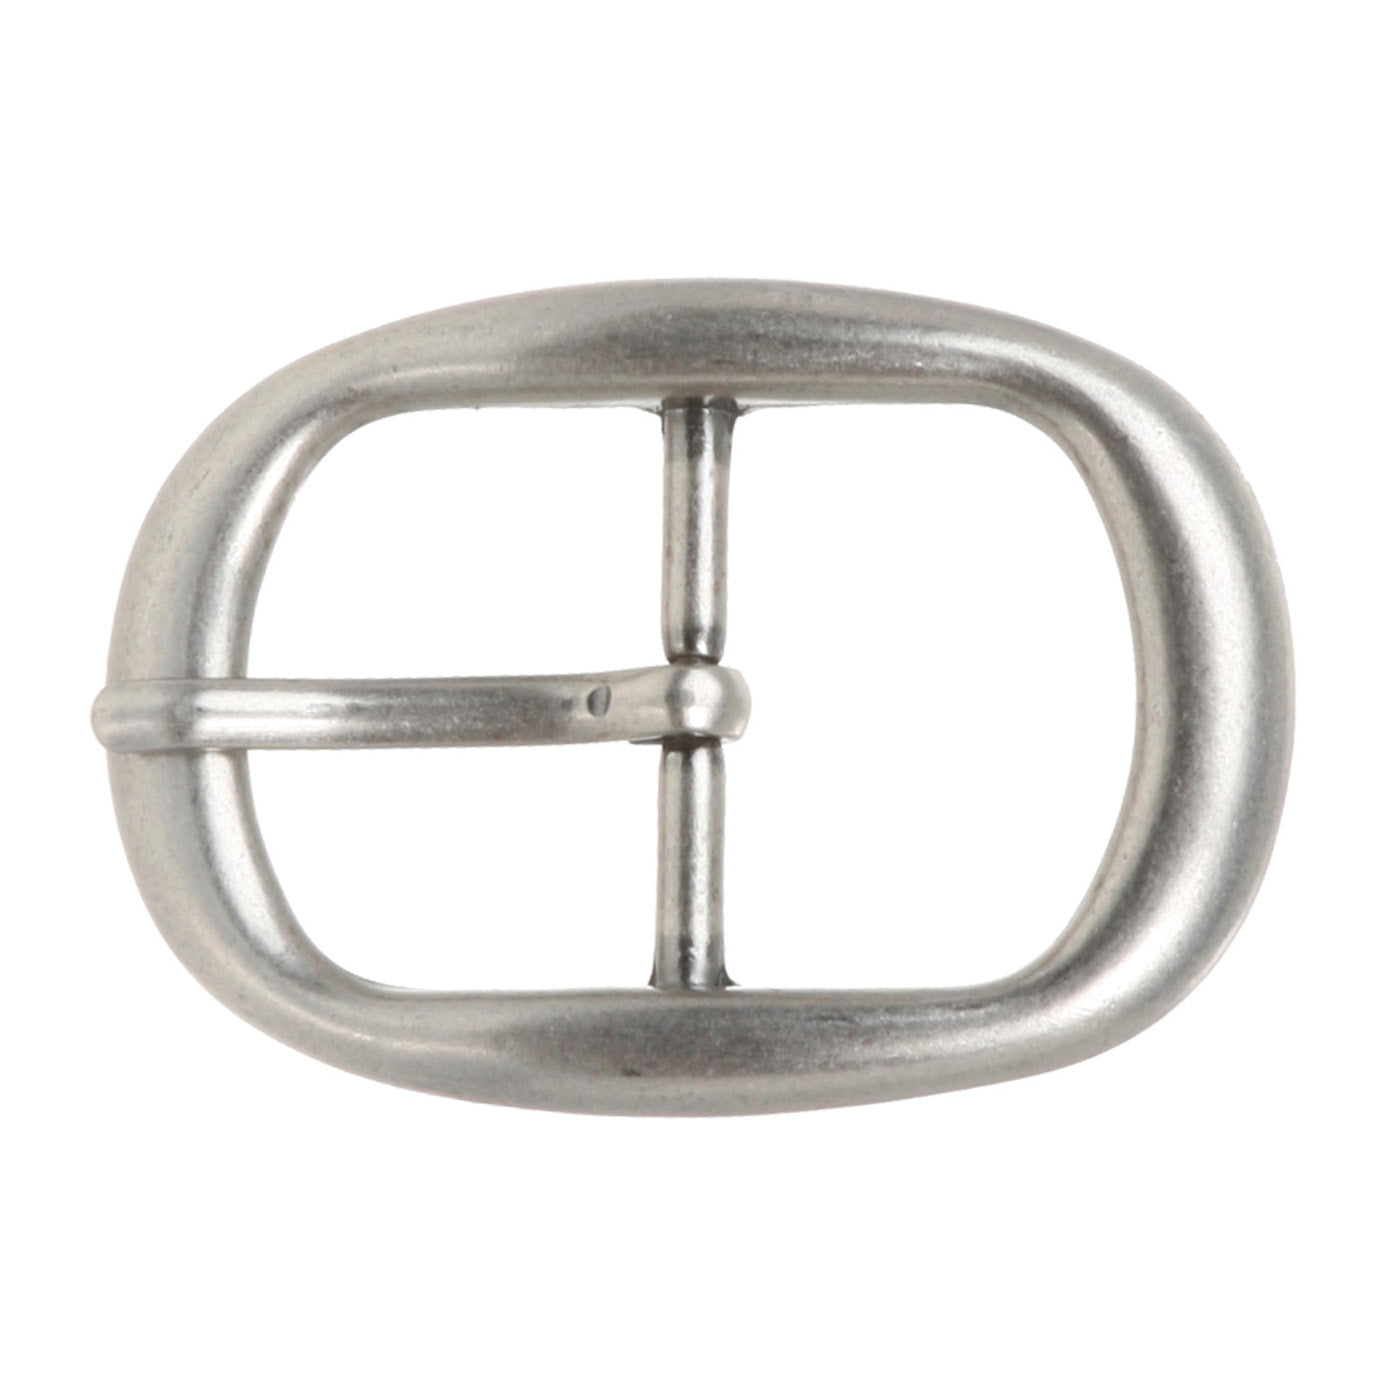 1 3/8" (33 mm) Single Prong Oval Belt Buckle